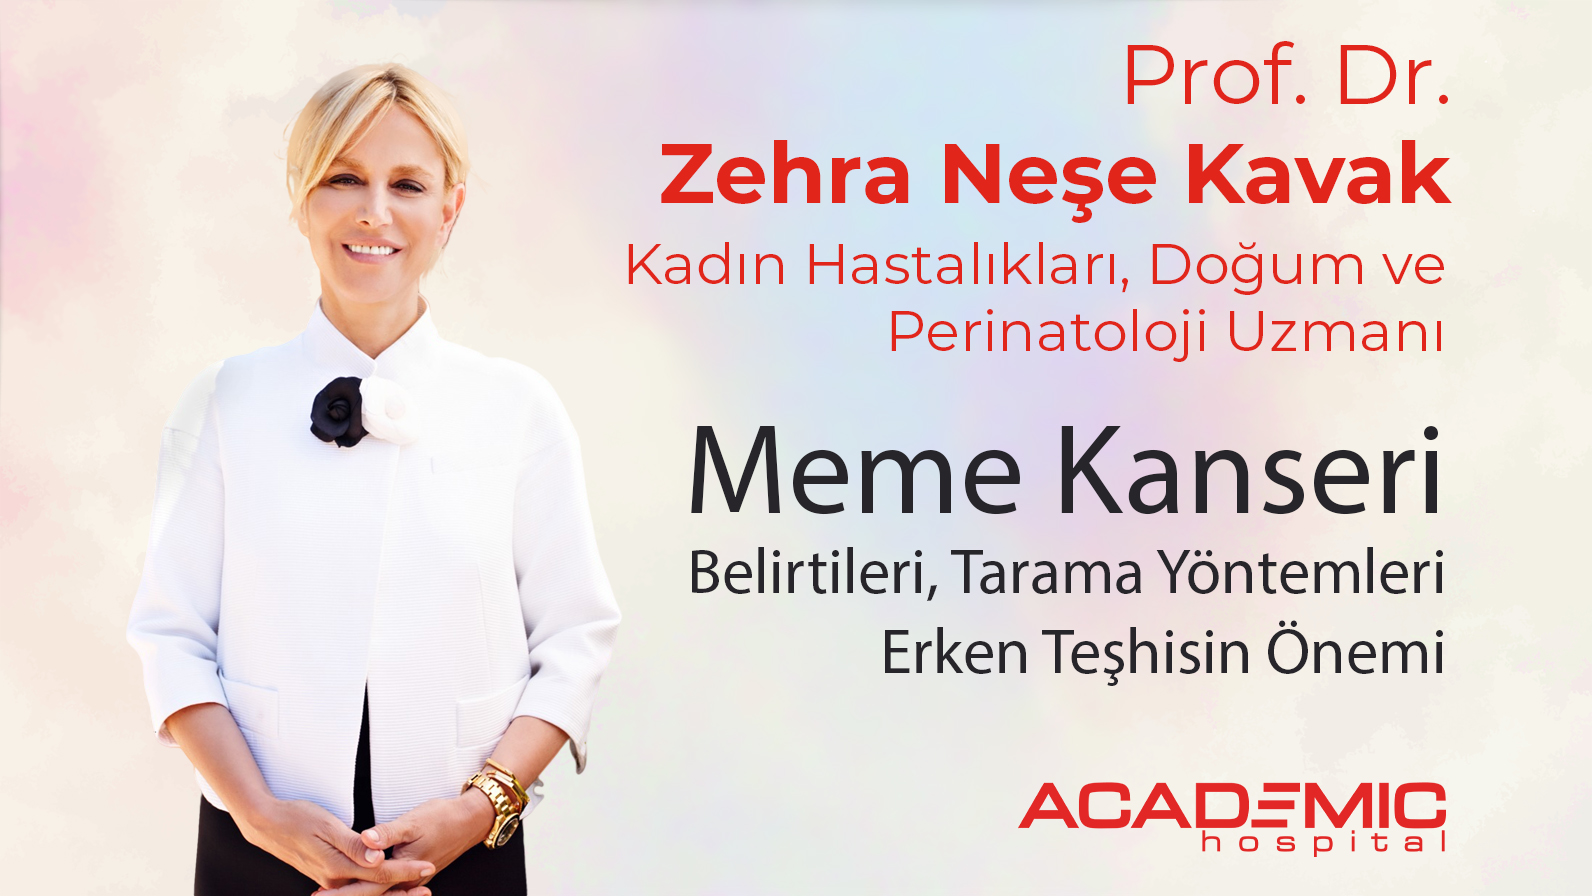 Prof. Dr. Zehra Neşe Kavak Meme Kanseri Hakkında Önemli Bilgiler Verdi!